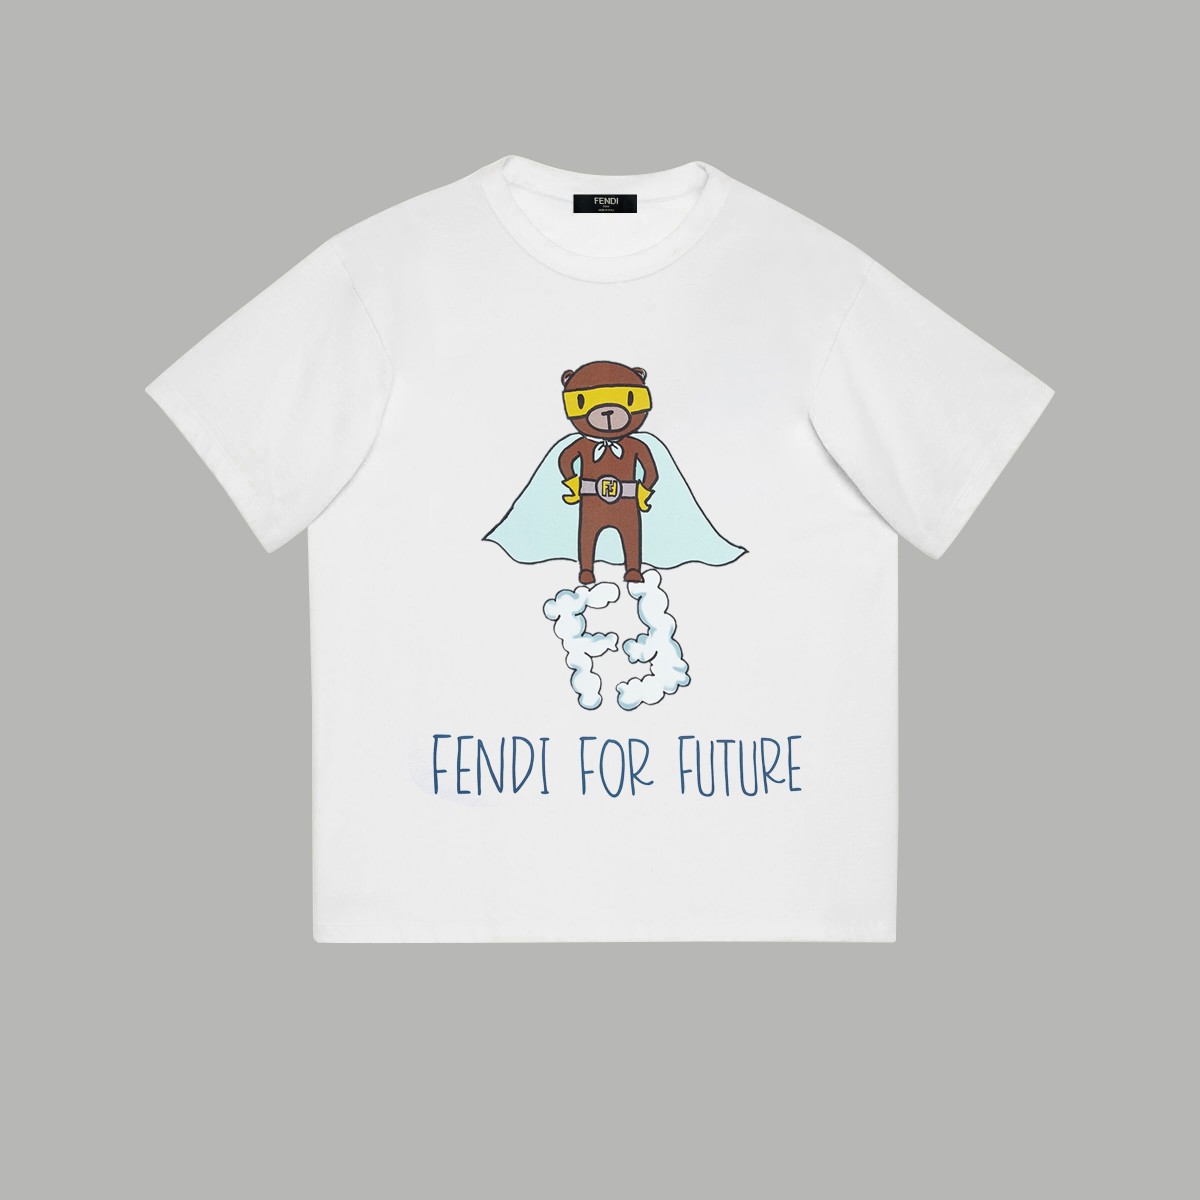 Fendi Clothing T-Shirt Printing Unisex Combed Cotton Short Sleeve